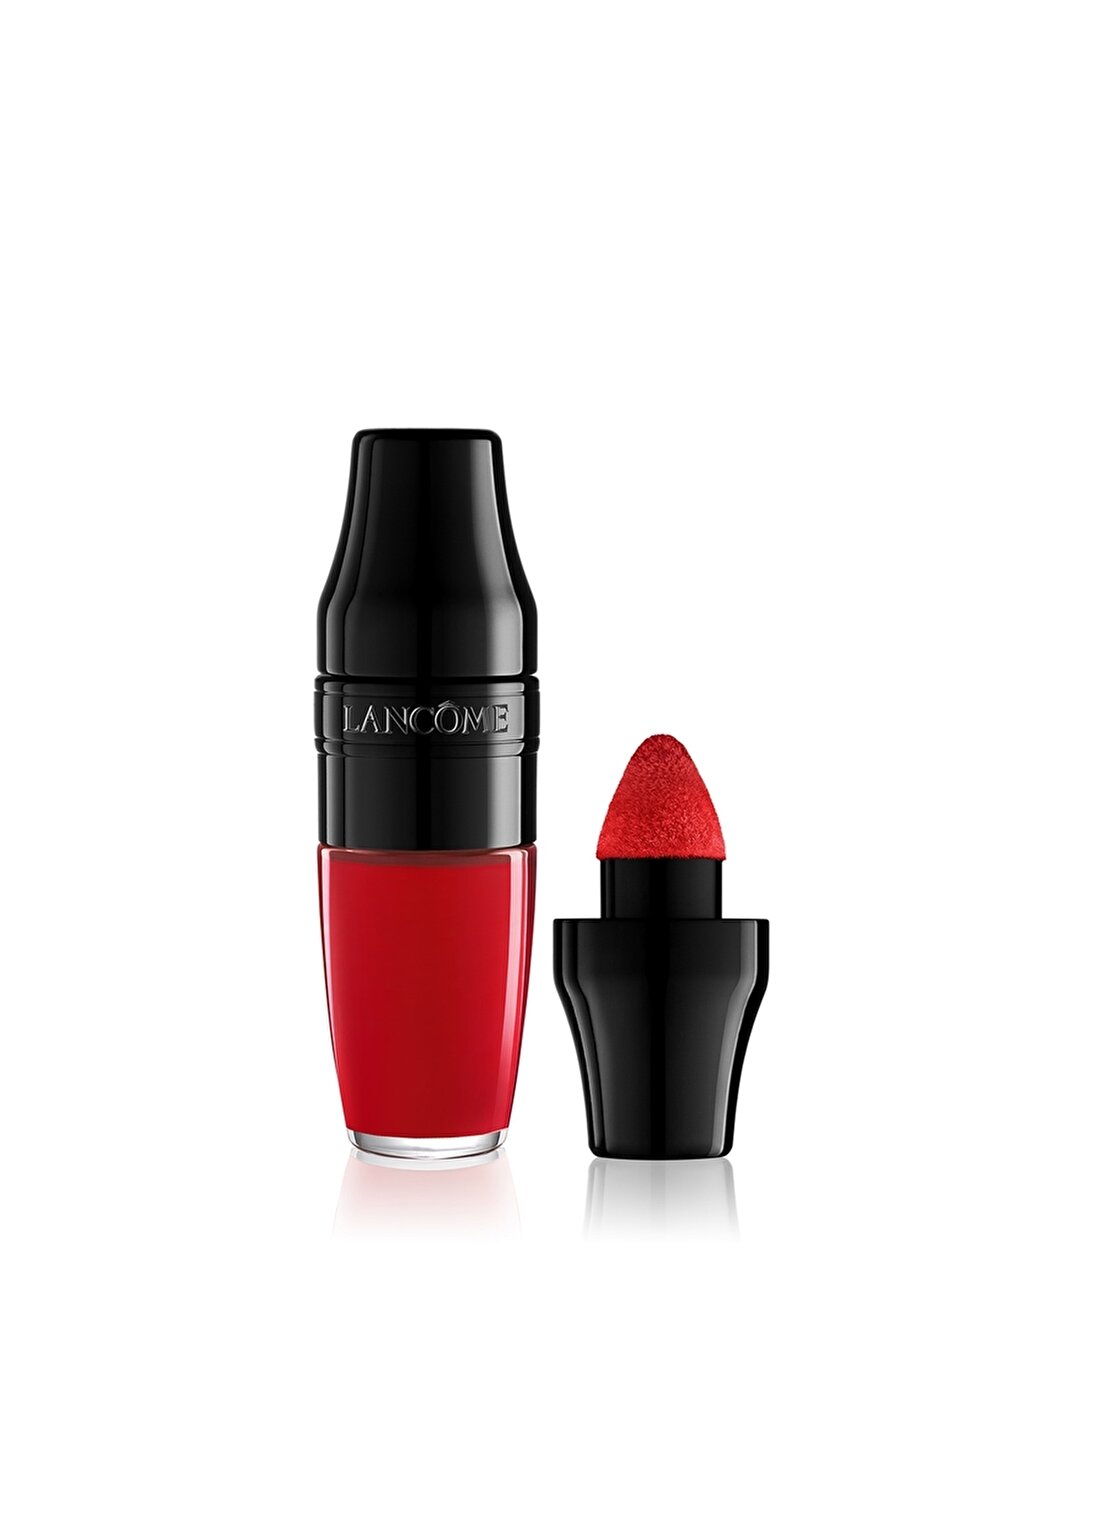 Lancome Matte Shaker Lipstick - 189 Redy In 5 Ruj